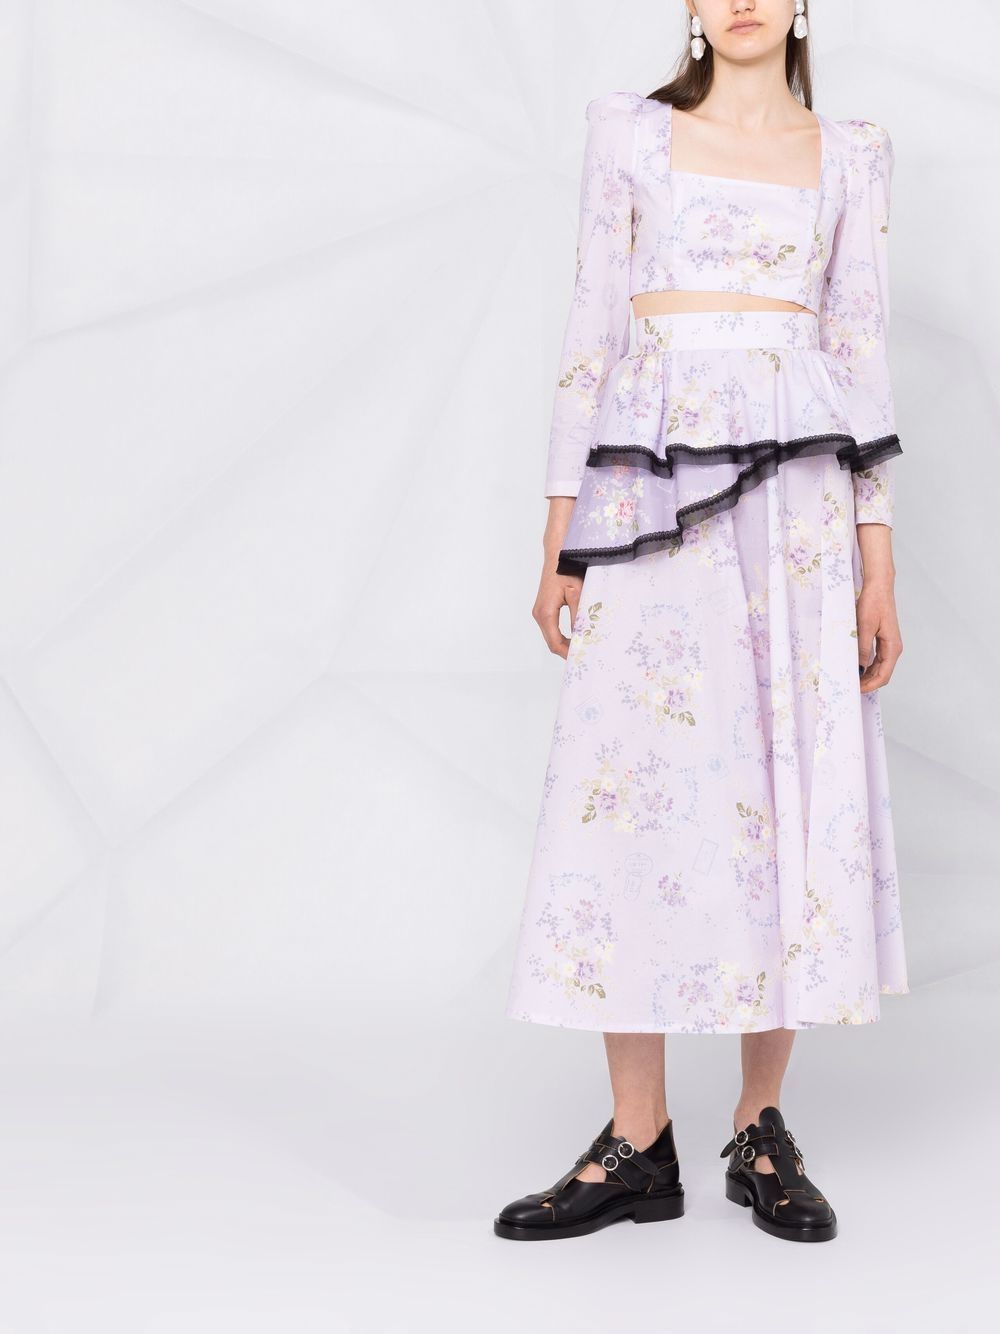 фото Ulyana sergeenko укороченная блузка с цветочным принтом